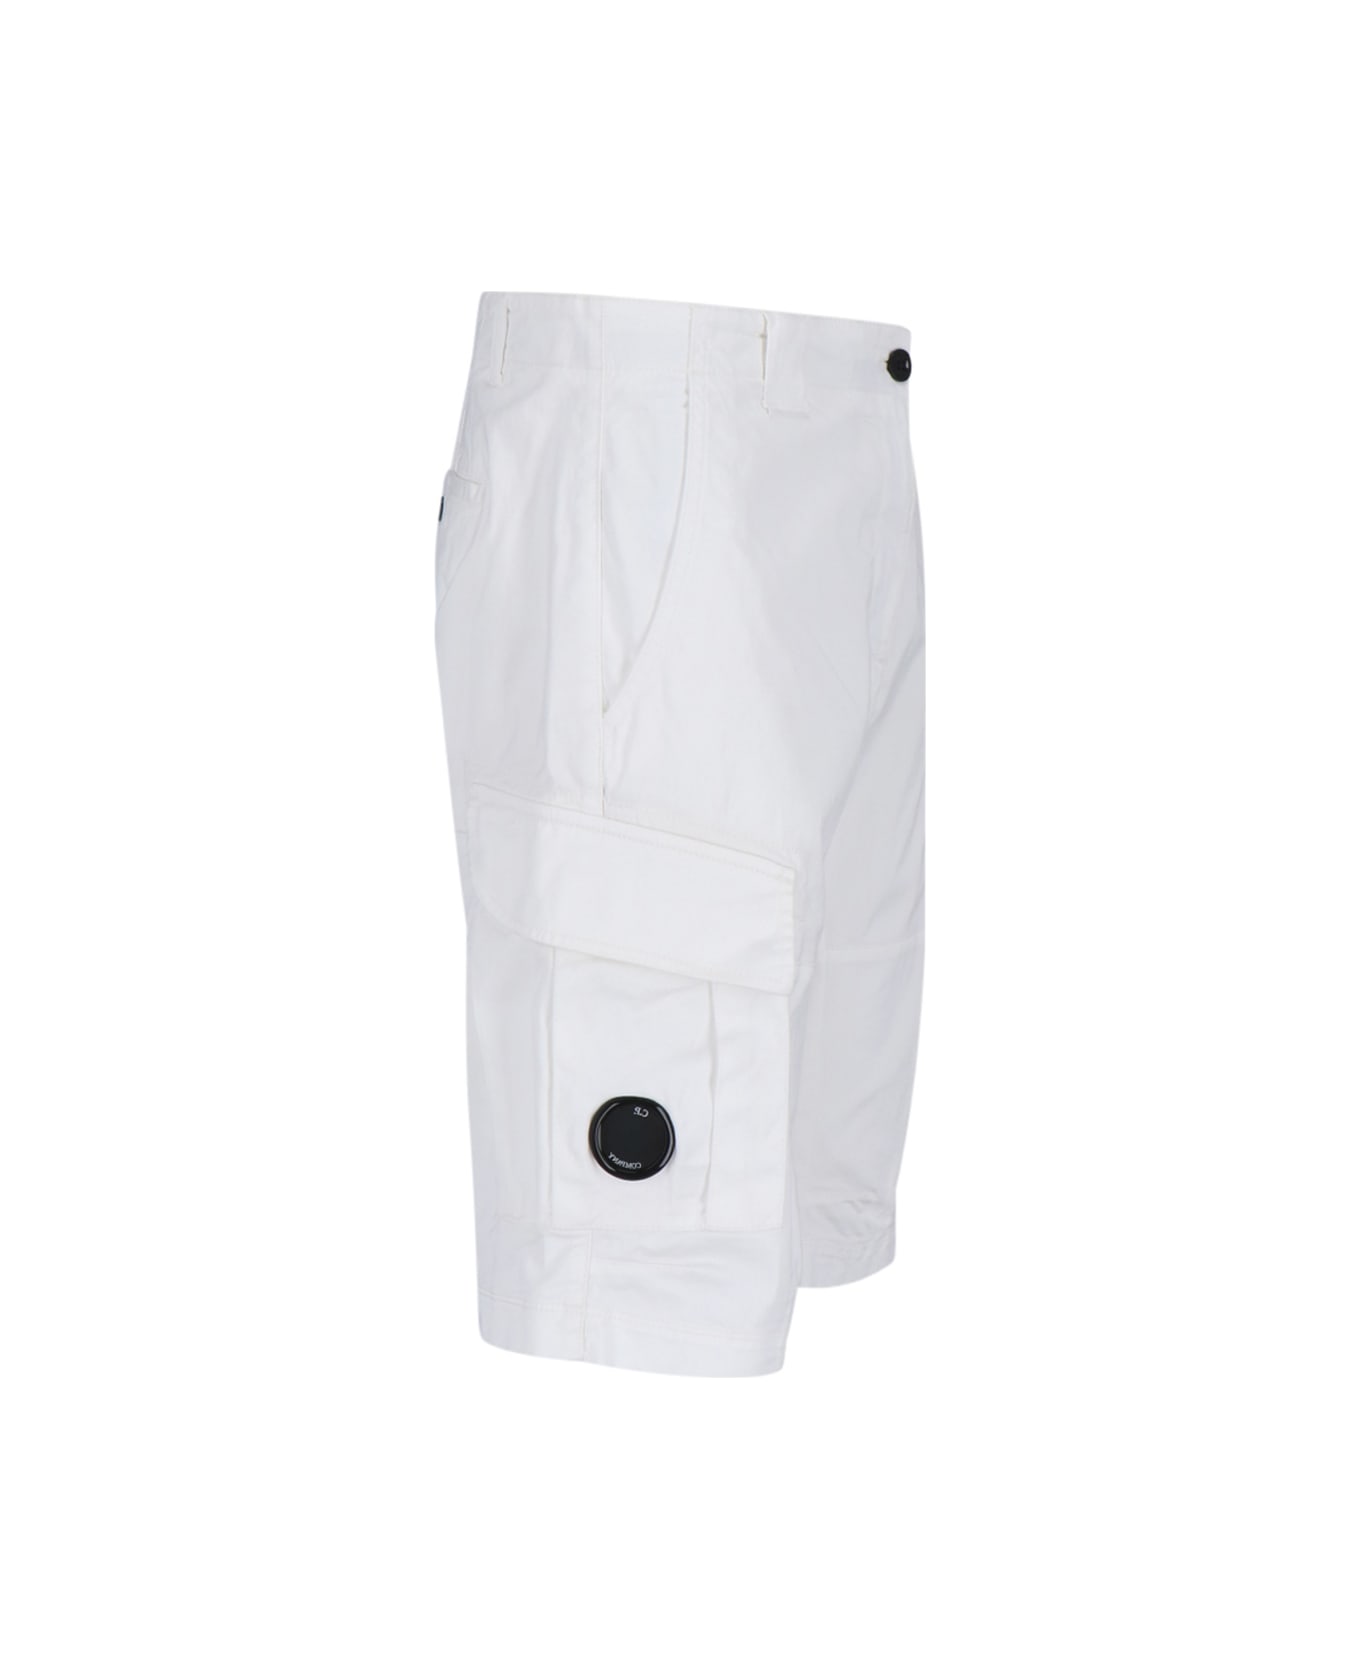 C.P. Company Logo Shorts - White ショートパンツ